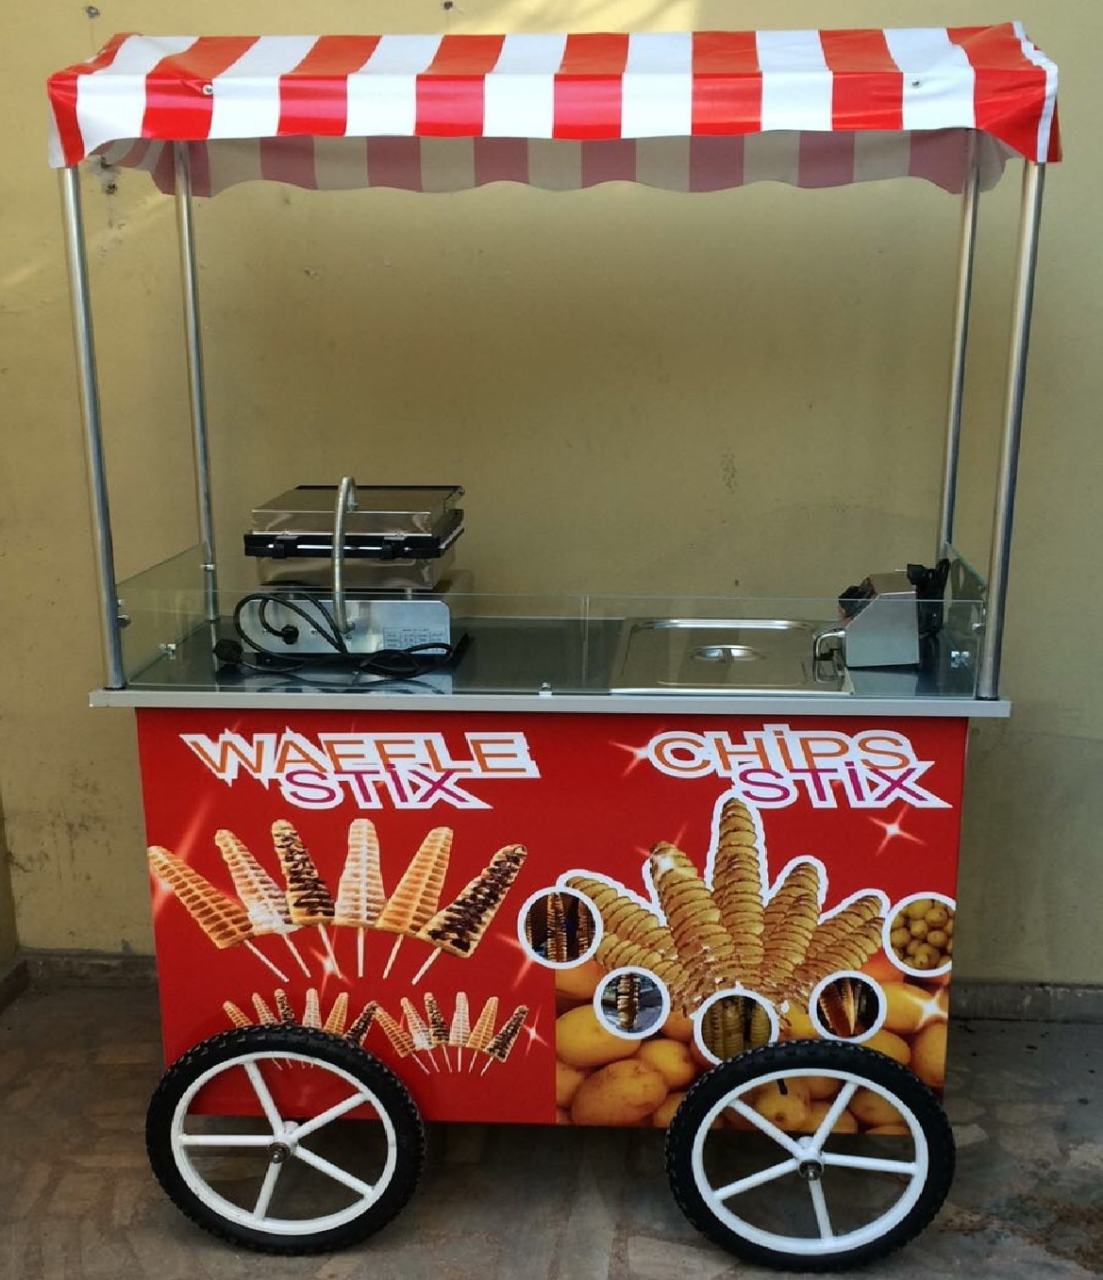 Çubukta Patates ve Çubukta Waffle Arabası (Model Sivas) 60x120